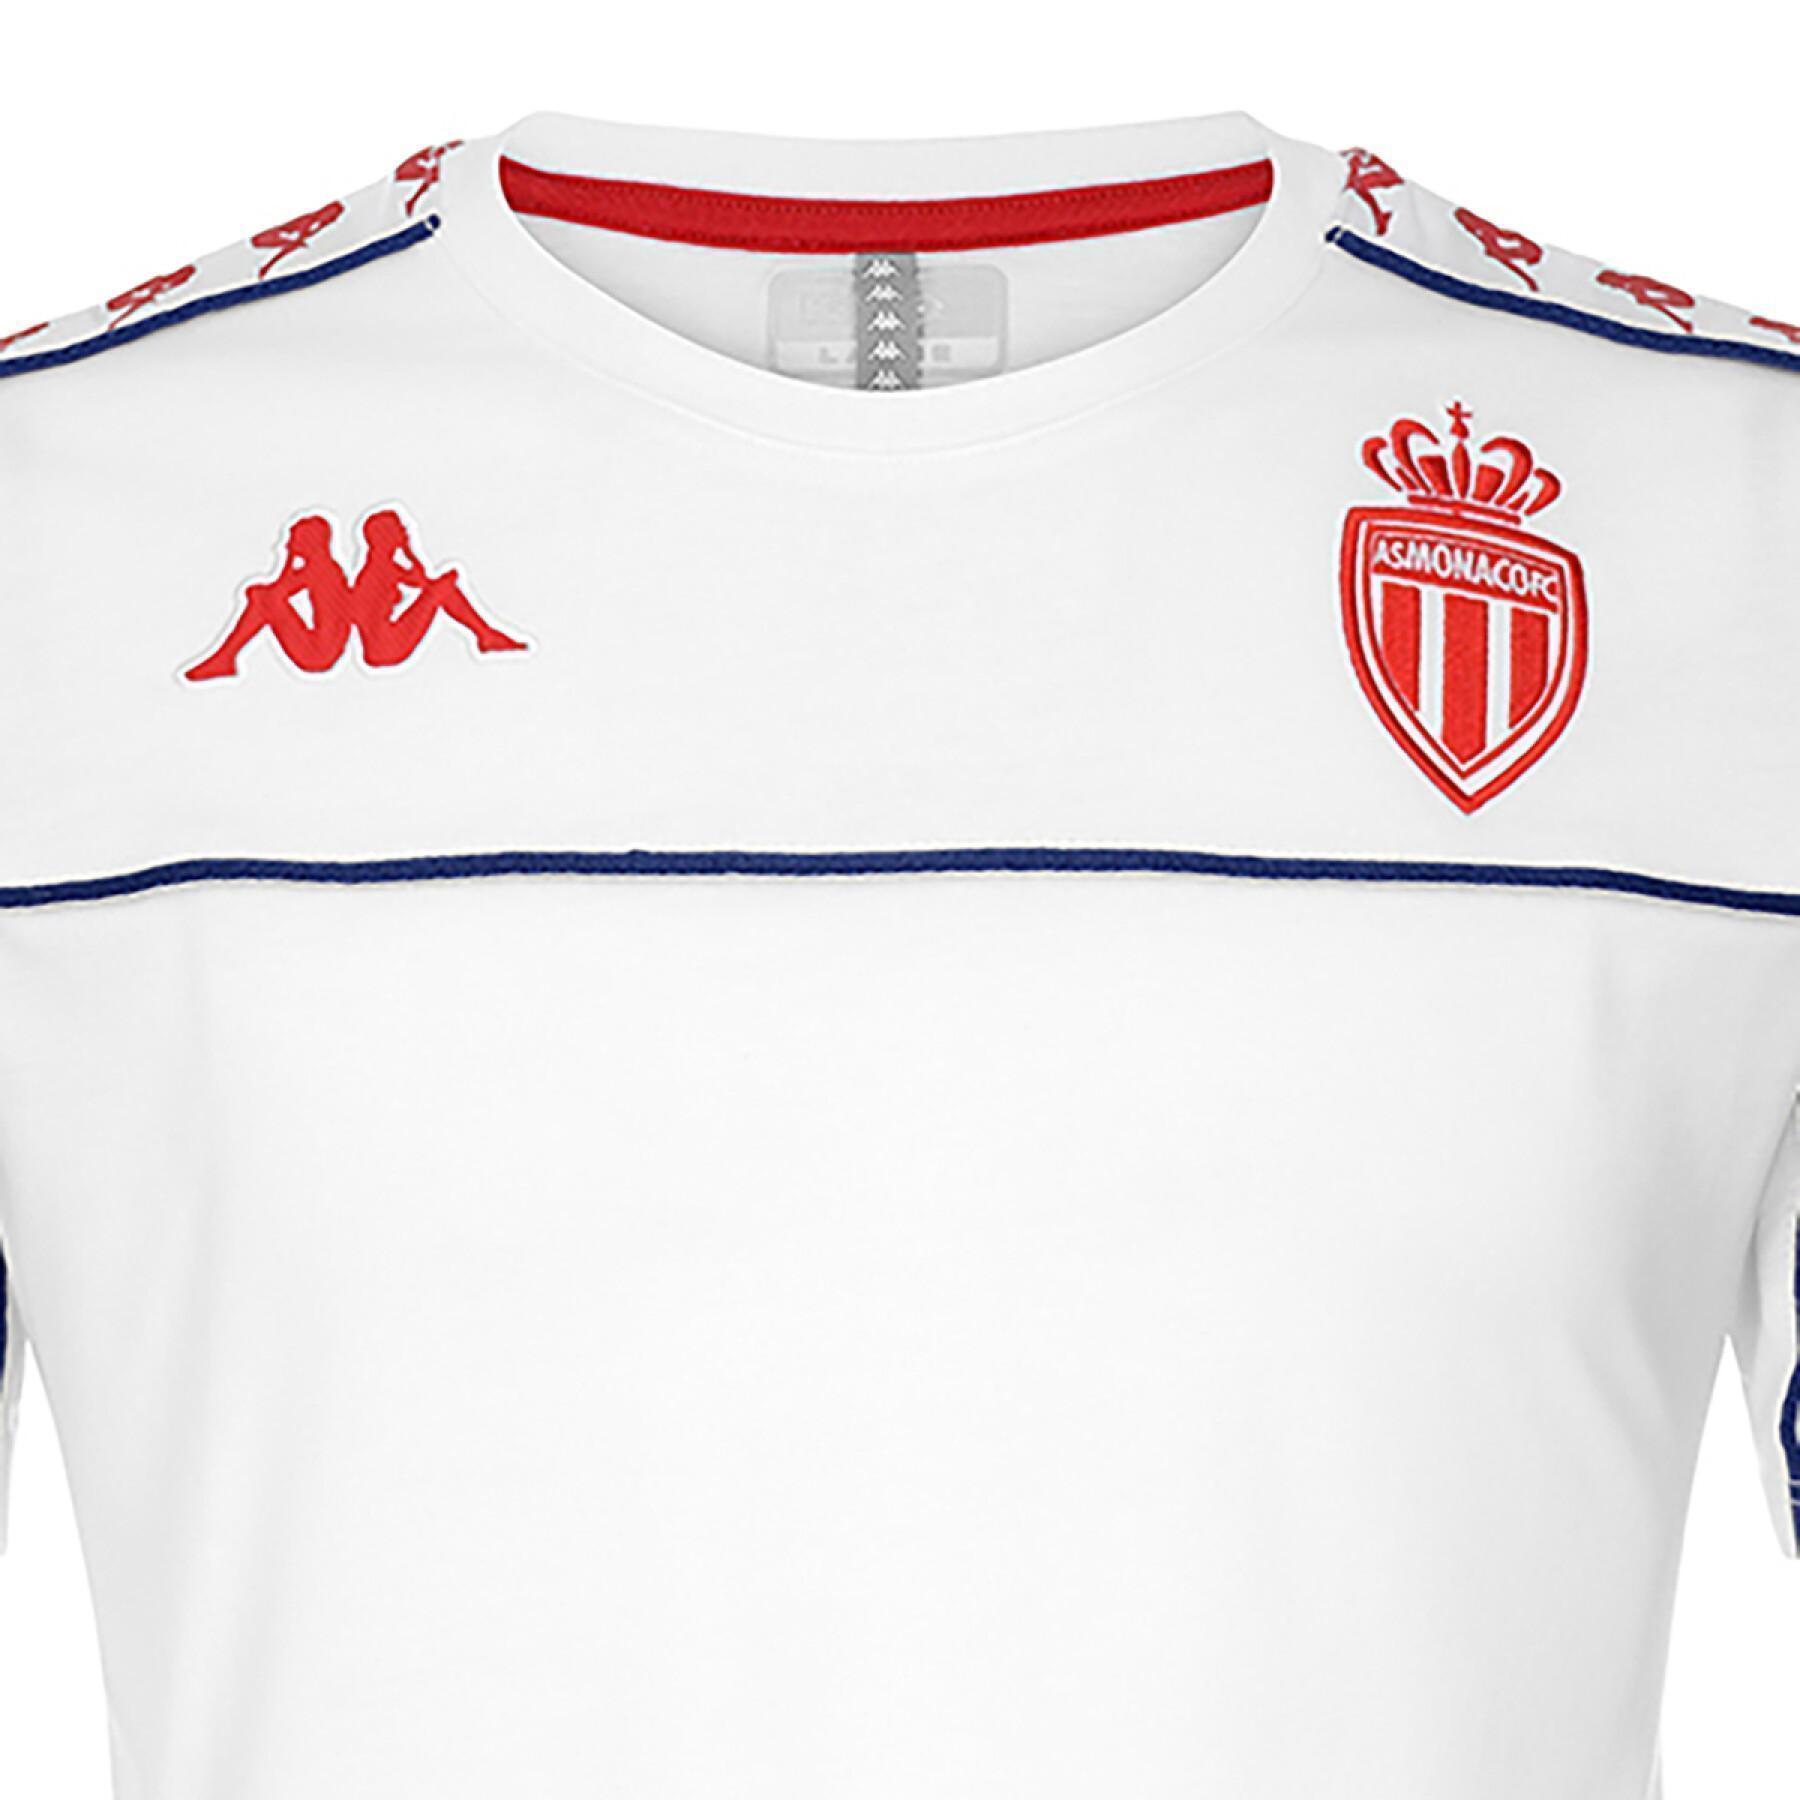 Koszulka AS Monaco 2021/22 222 banda arari slim